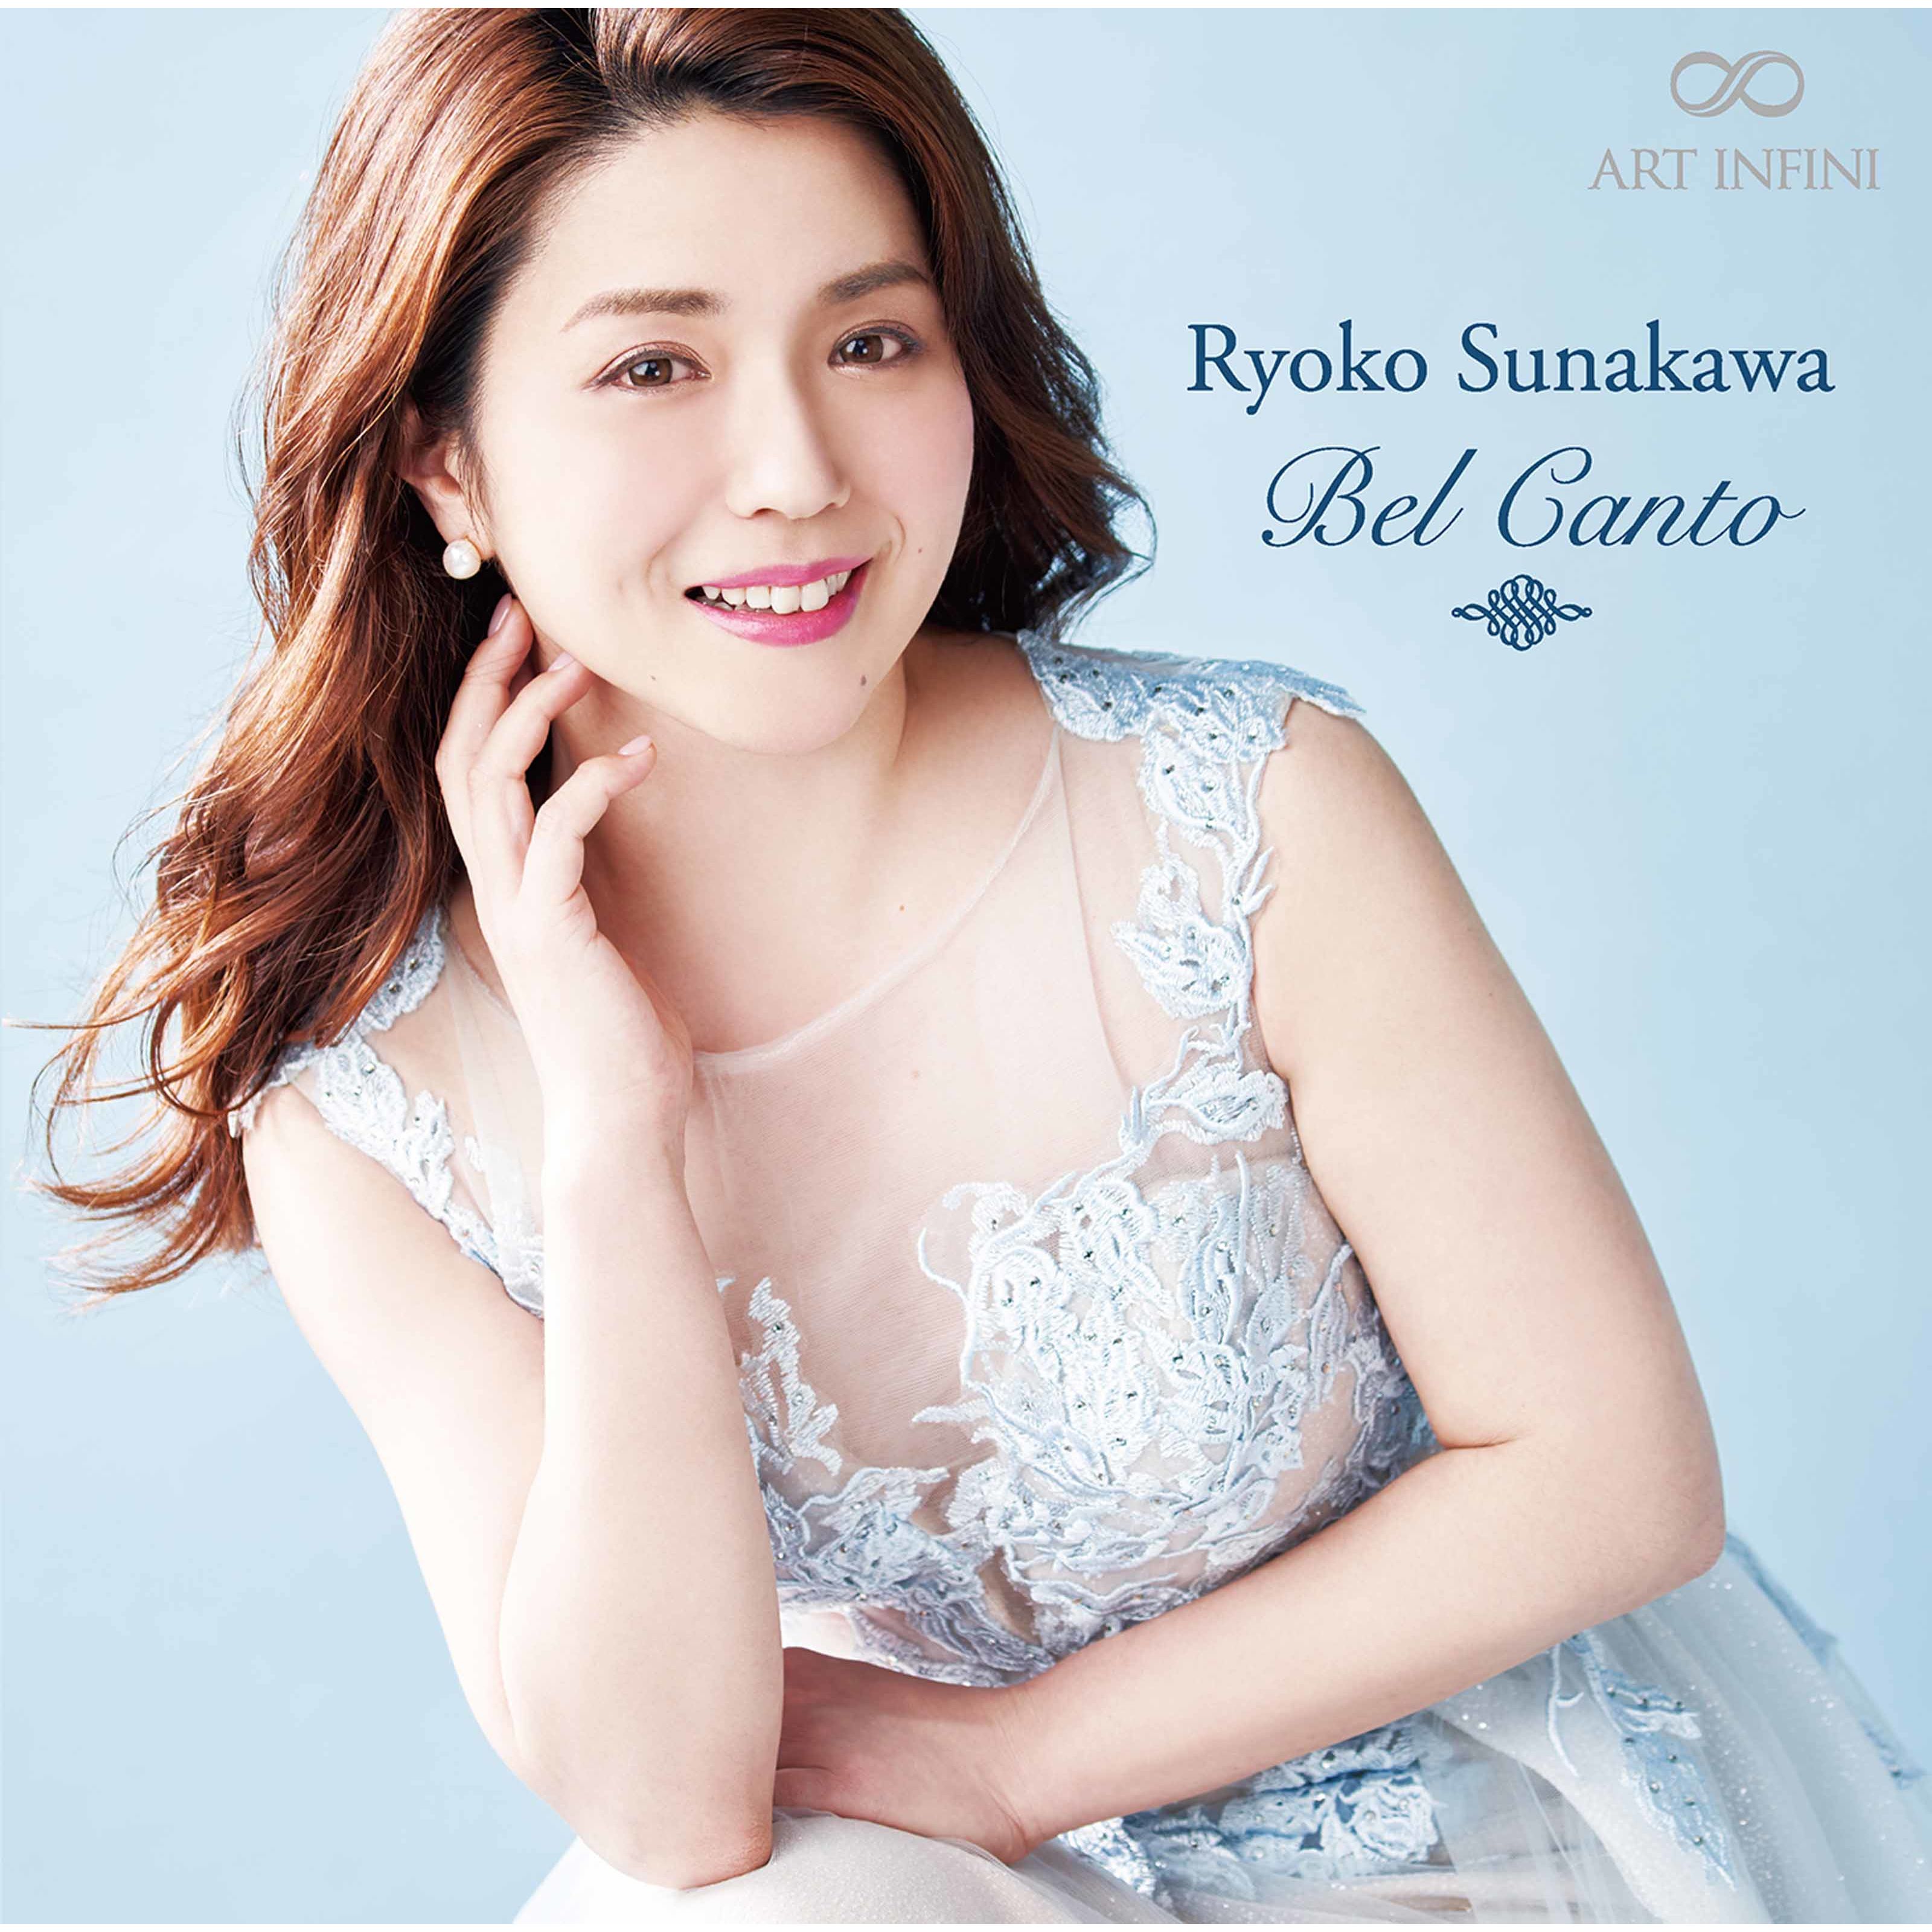 Ryoko Sunakawa – Bel canto